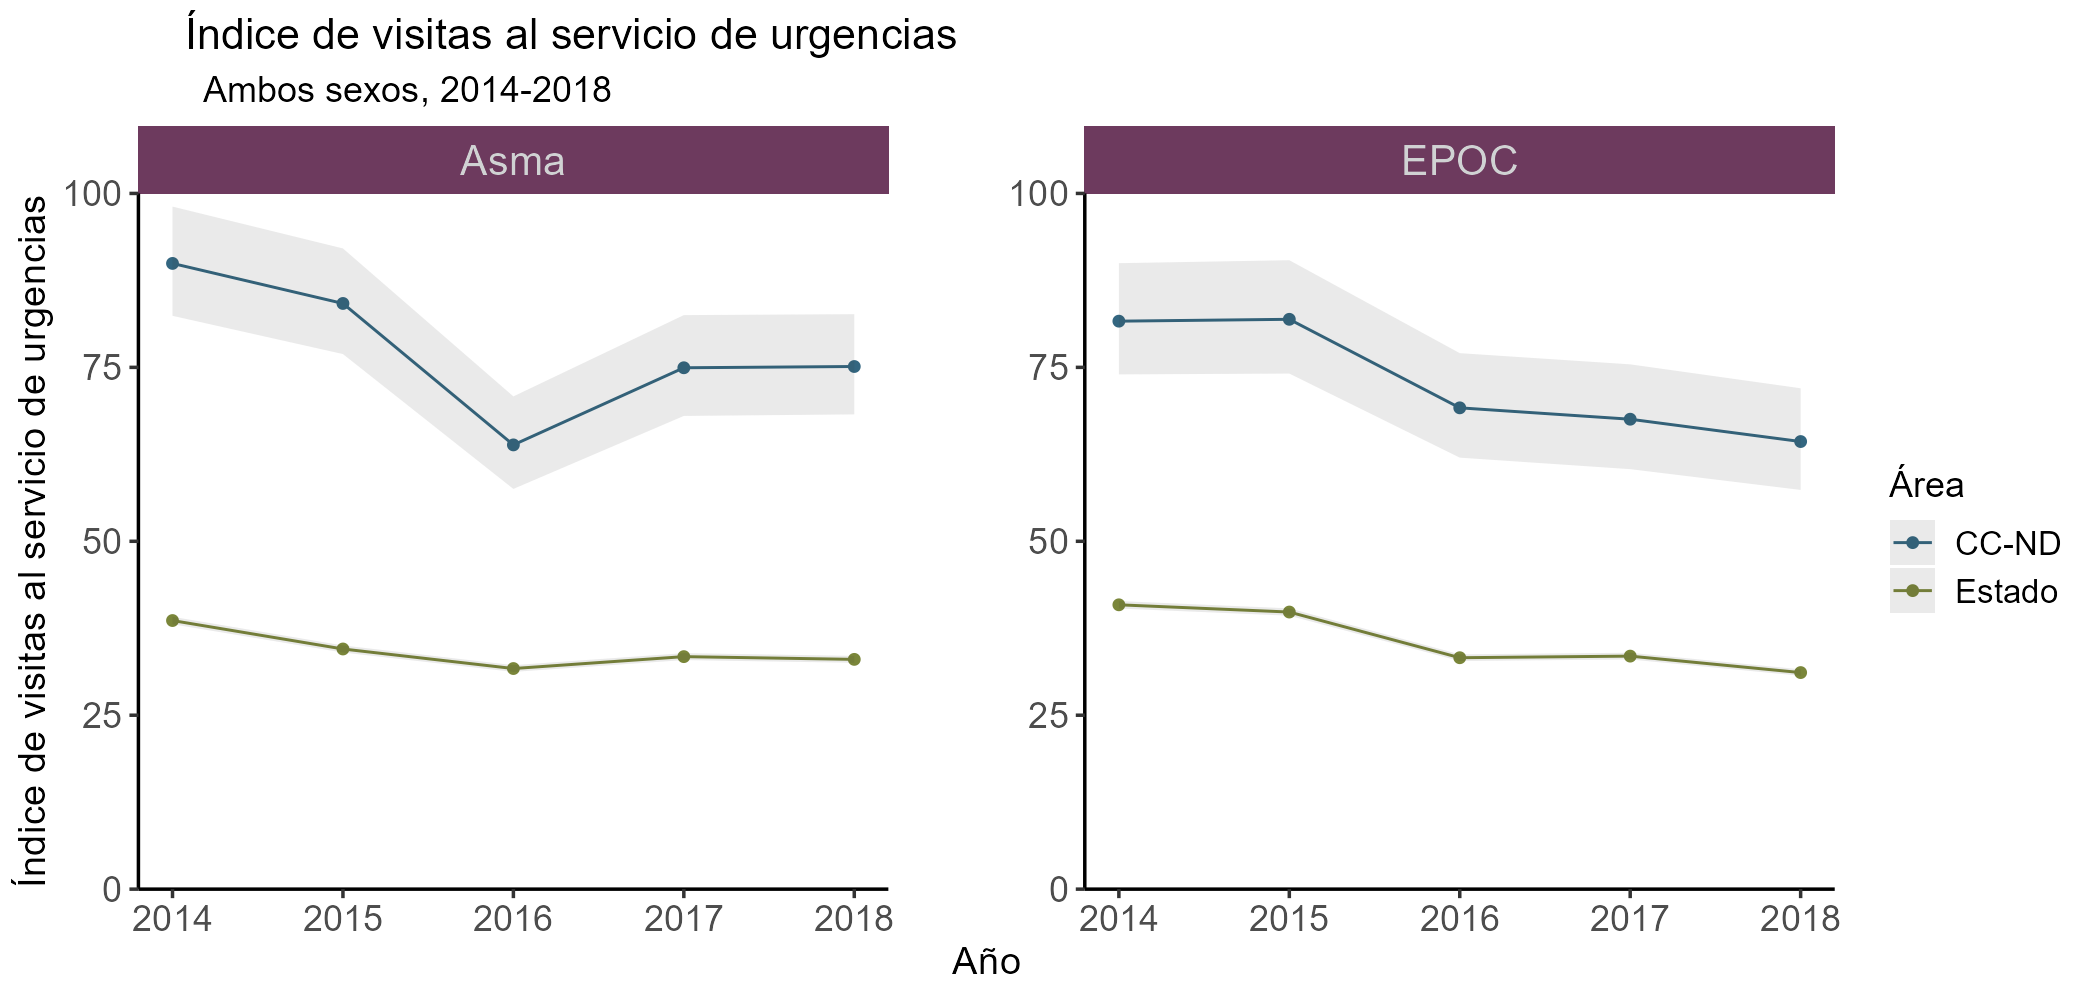 El gráfico: Índice de visitas al servicio de urgencias